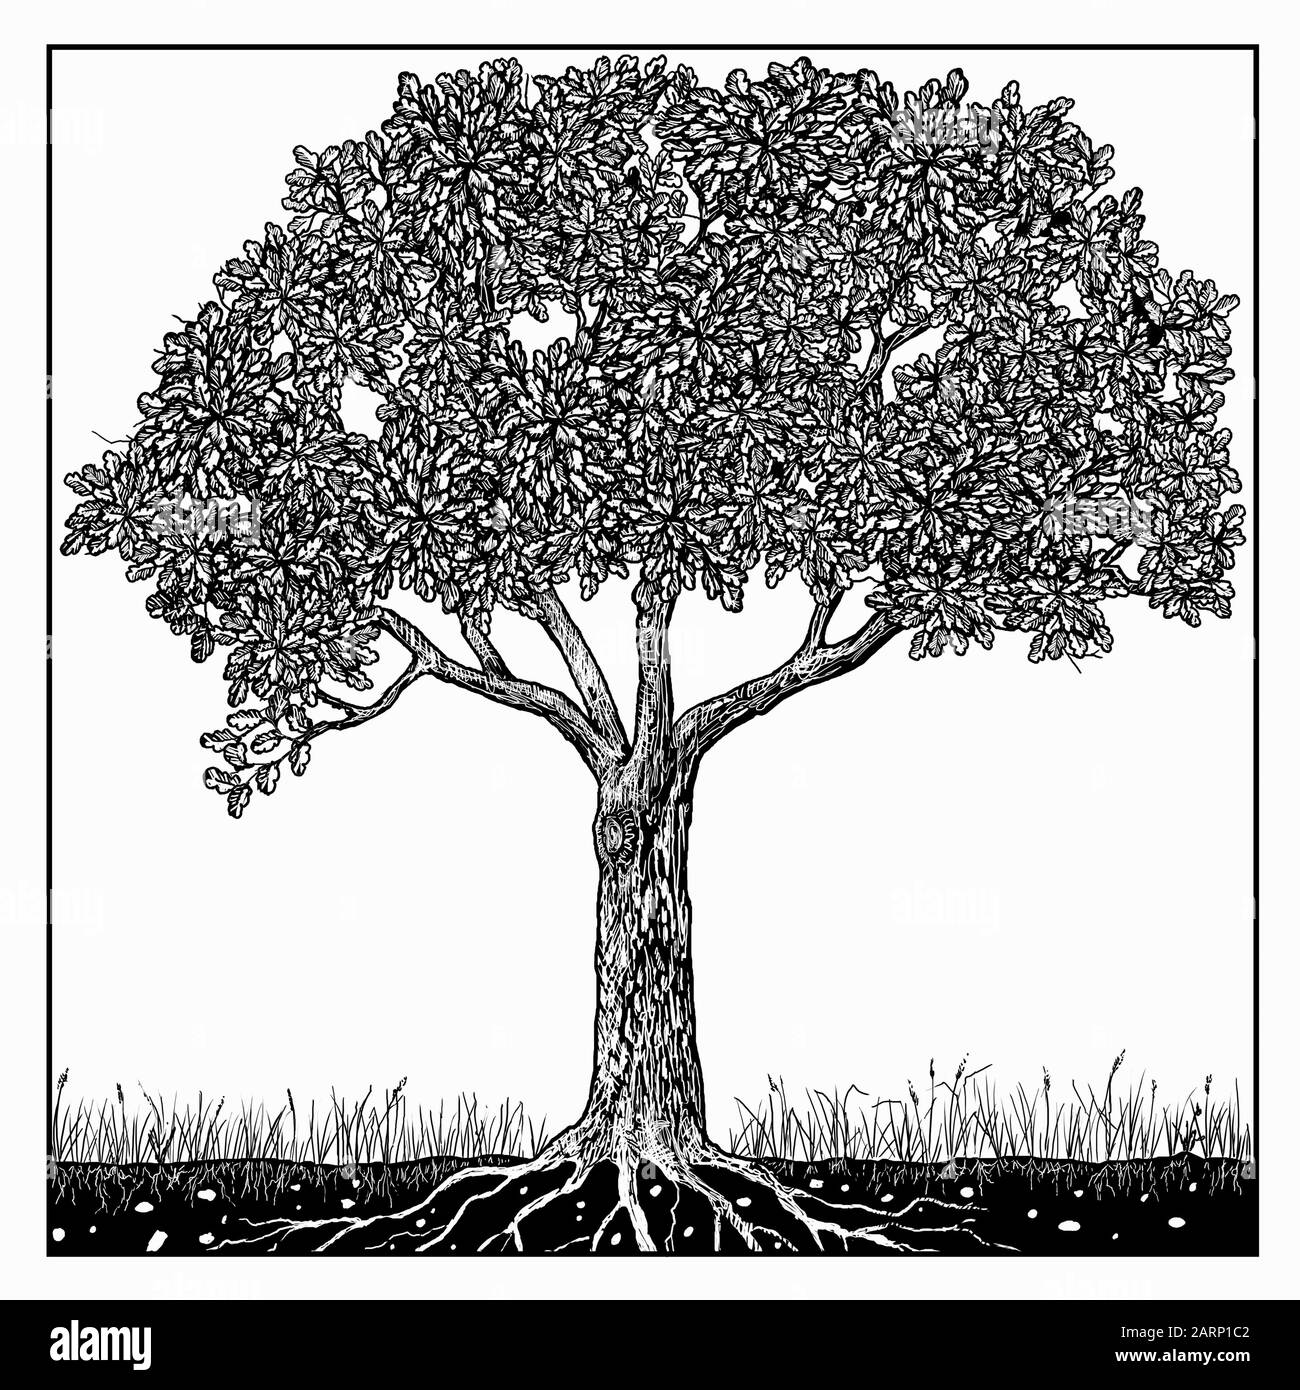 Dessin noir et blanc de l'arbre en été Banque D'Images